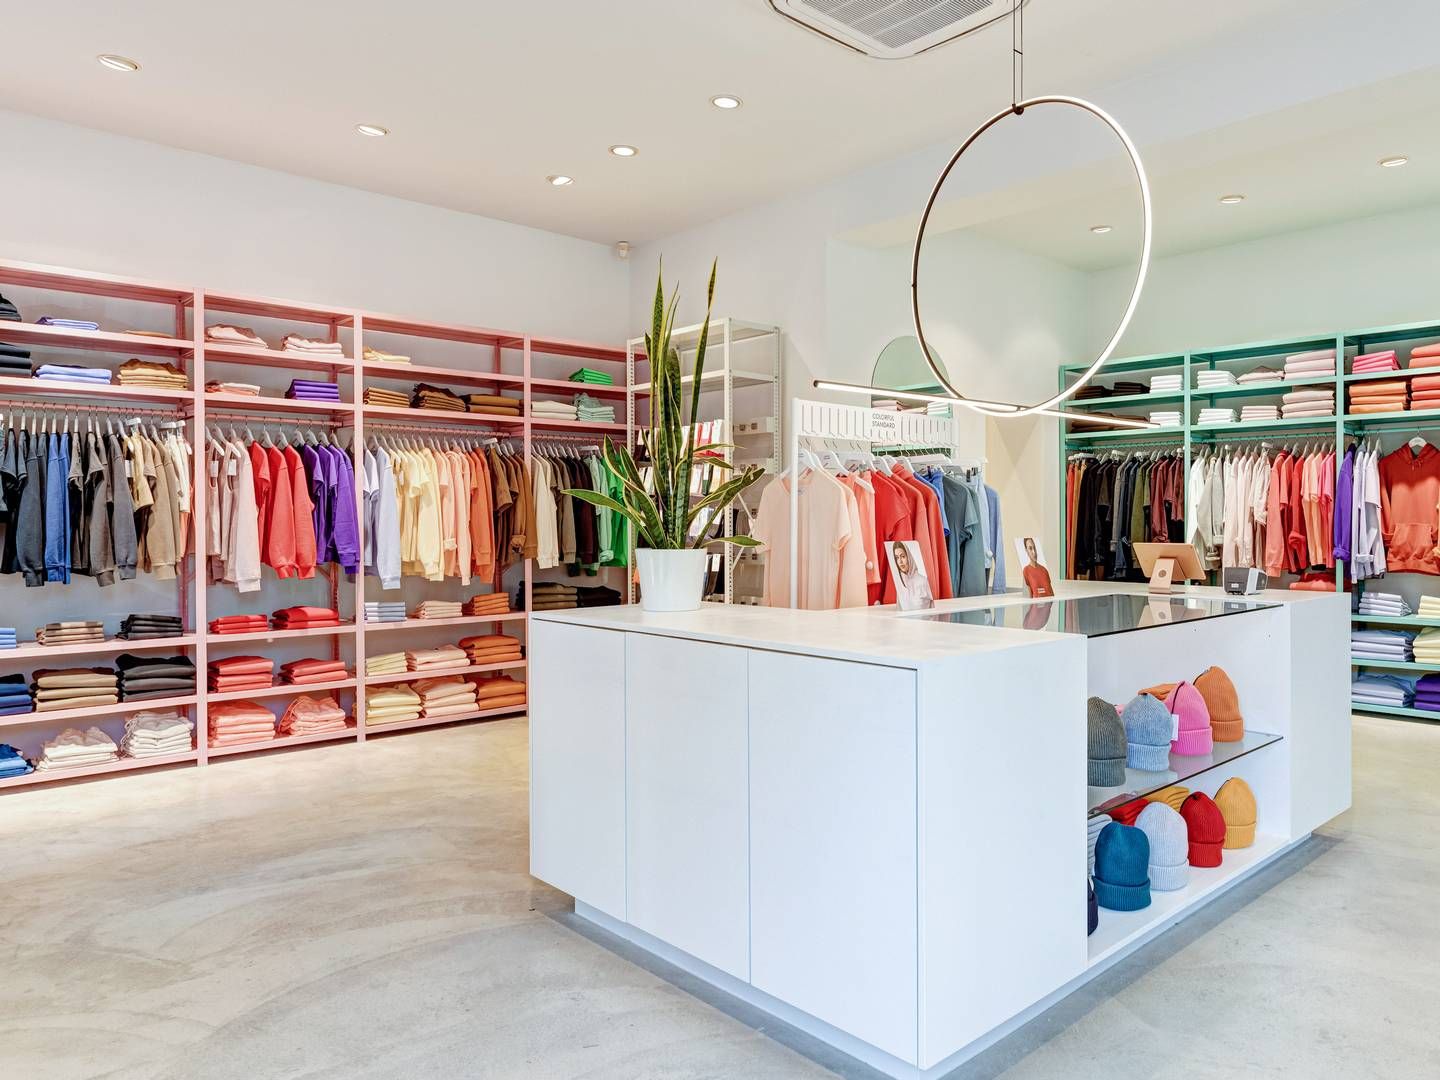 Det danske tøjfirma producerer farverigt tøj på egen fabrik i Portugal, som sælges i egne butikker og hos forhandlere. På billedet ses Colorful Standards butik i den belgiske by Antwerpen. | Foto: Colorful Standard/pr